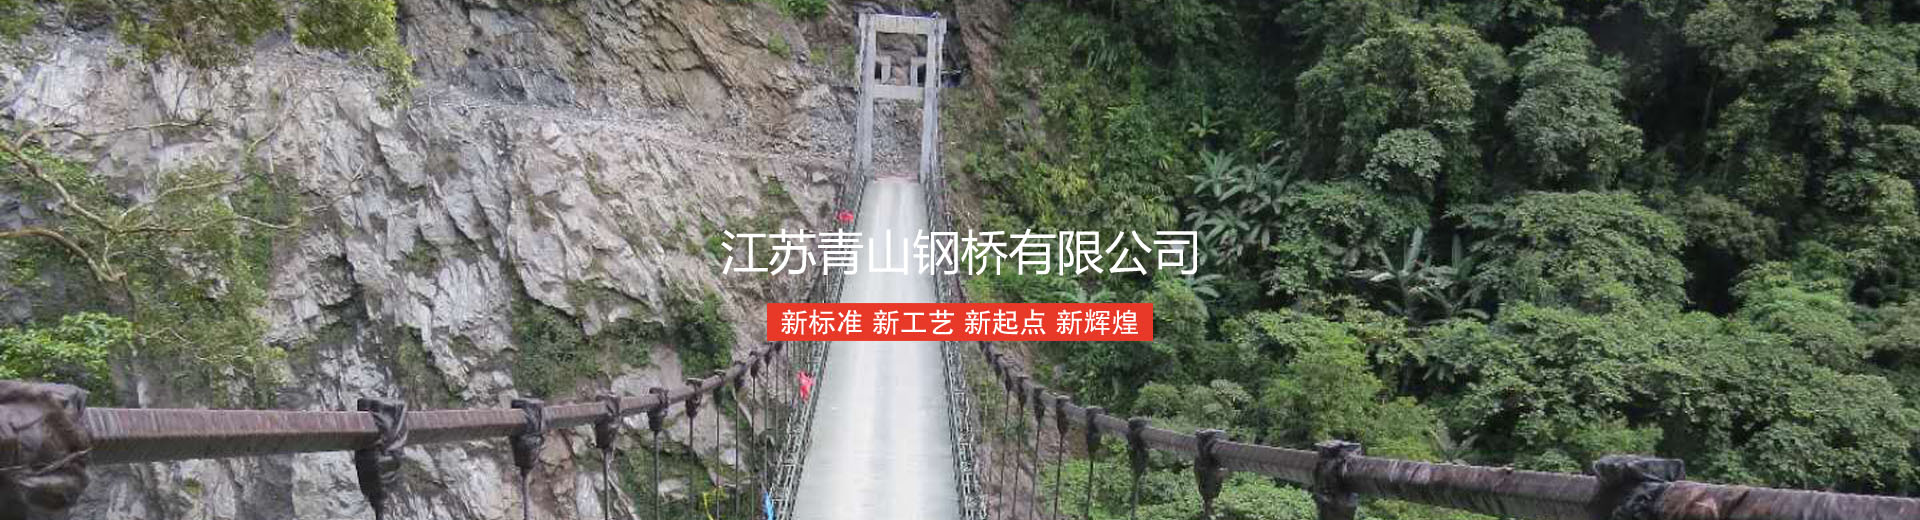 江苏青山钢桥有限公司